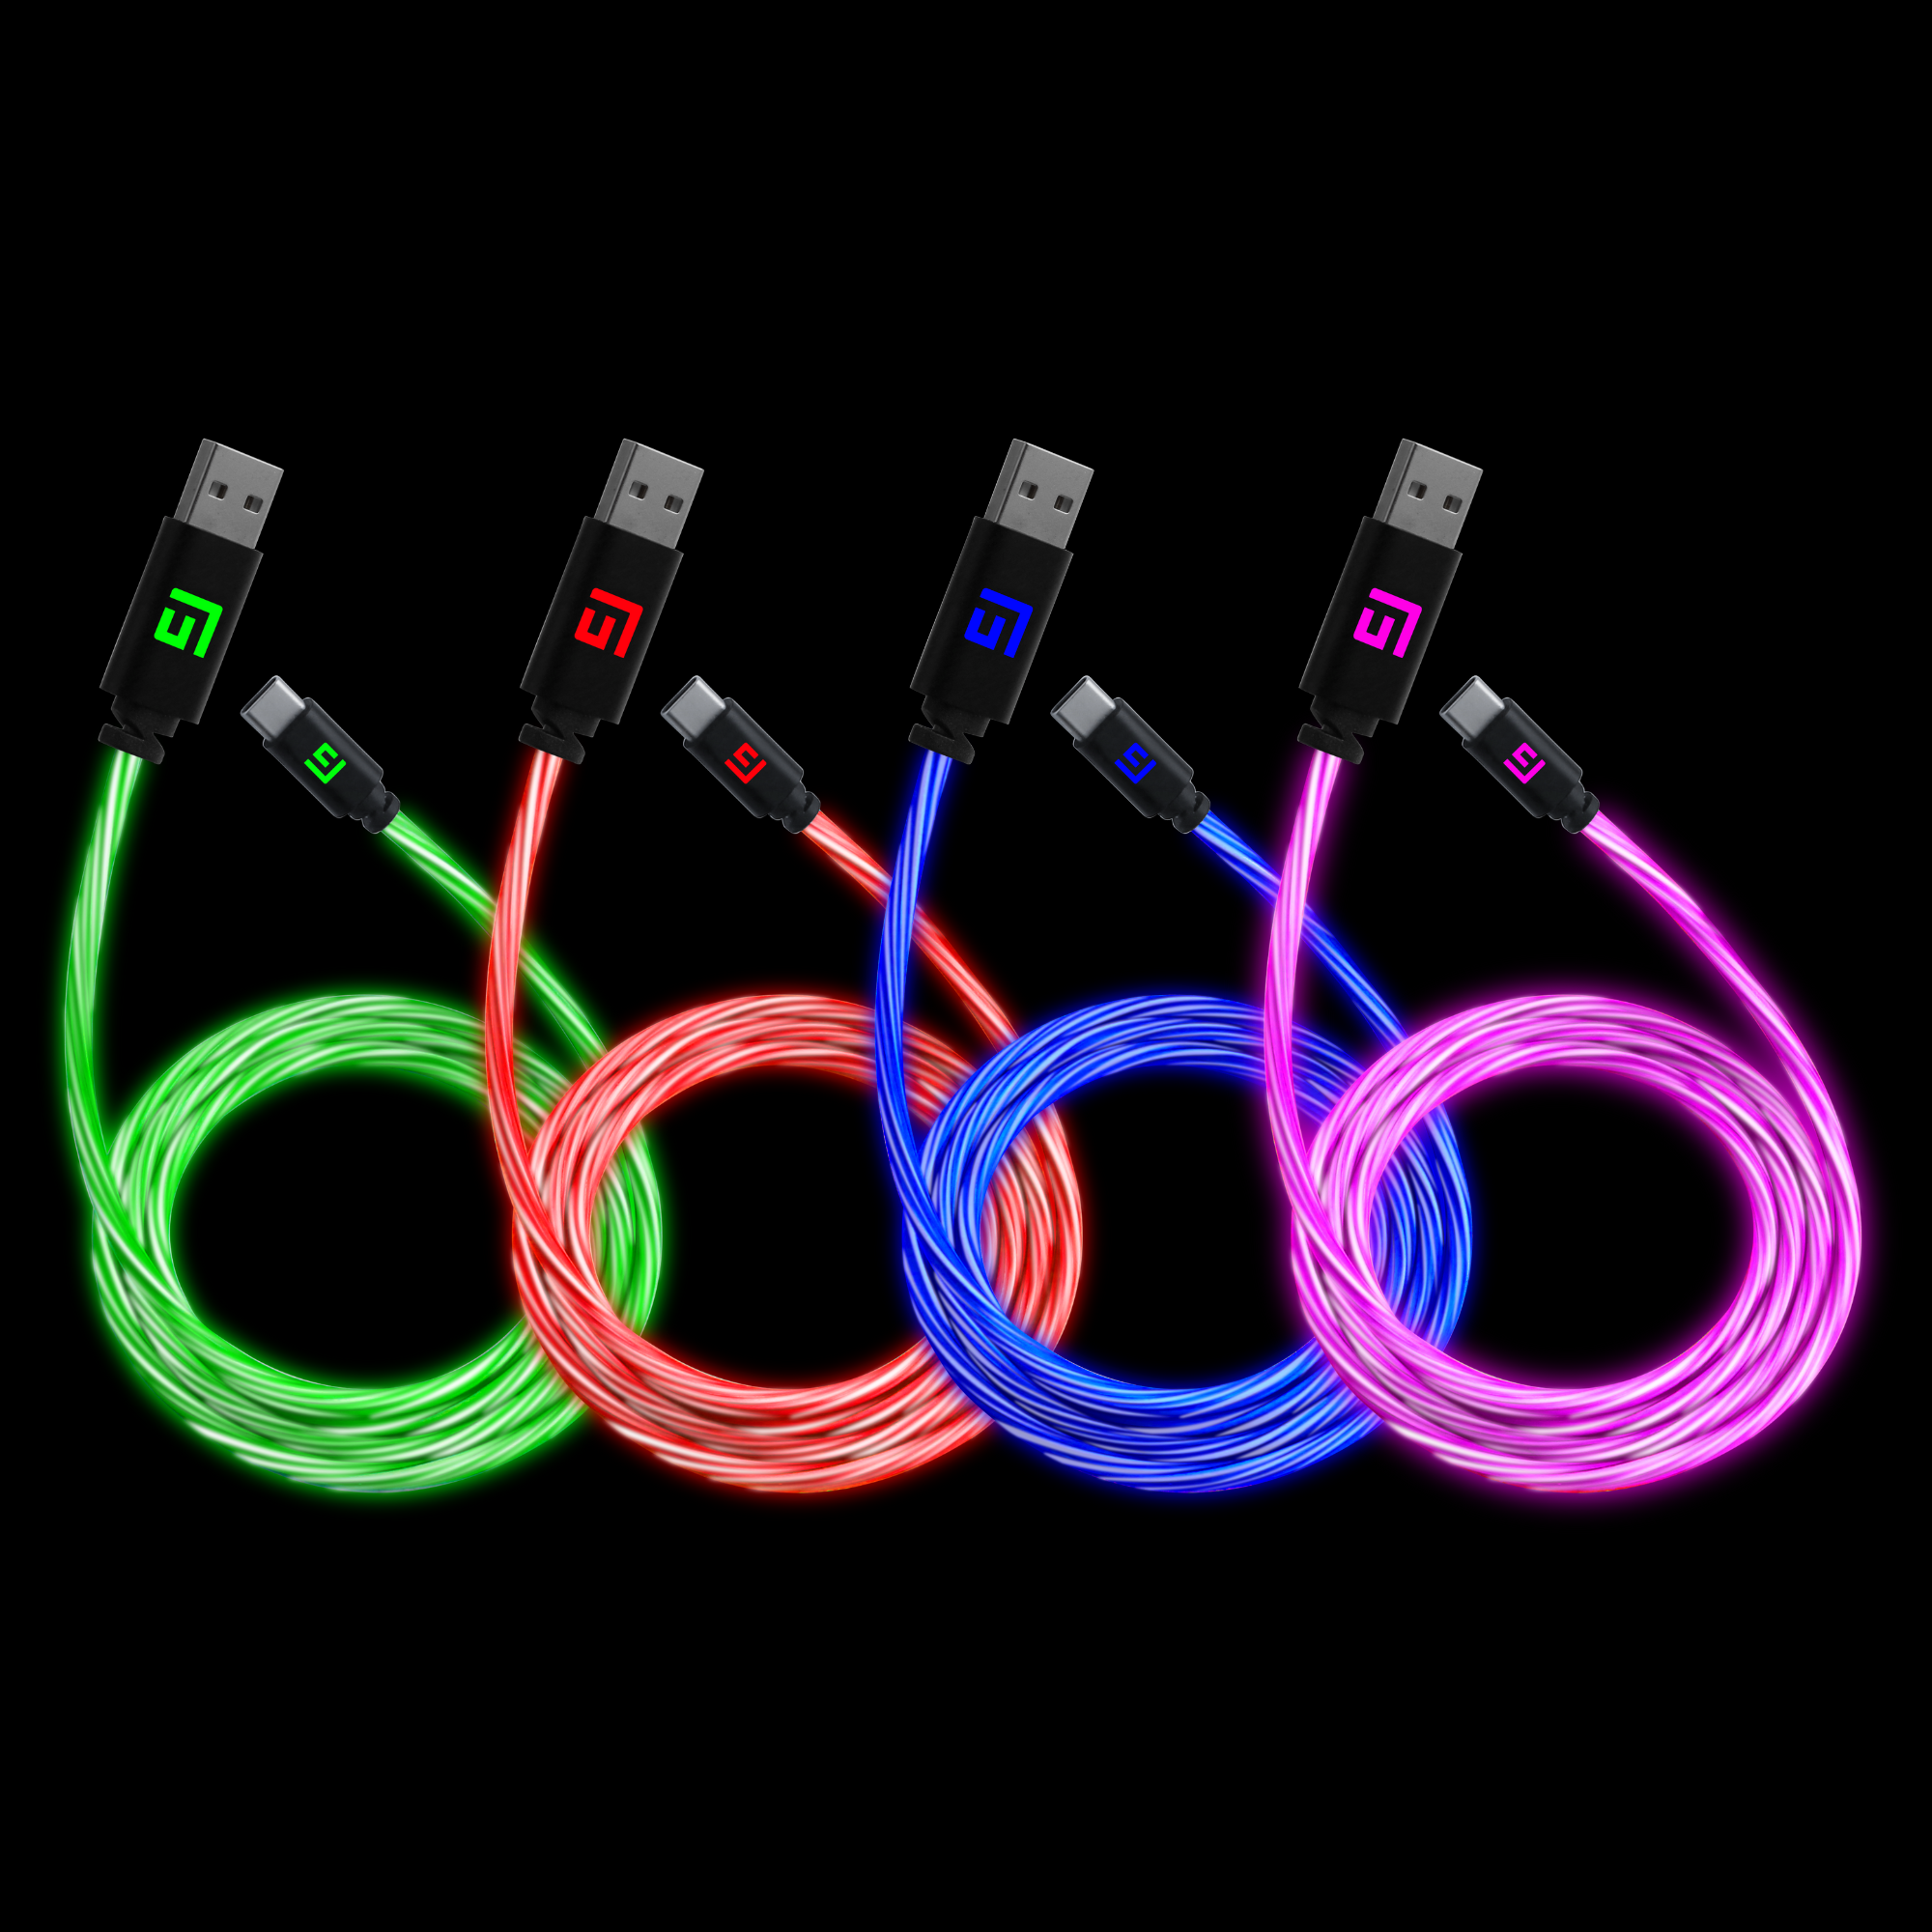 0,5M/2ft LED USB-C/USB-A Kabel | Schnellladung + Synchronisation (4er Pack)